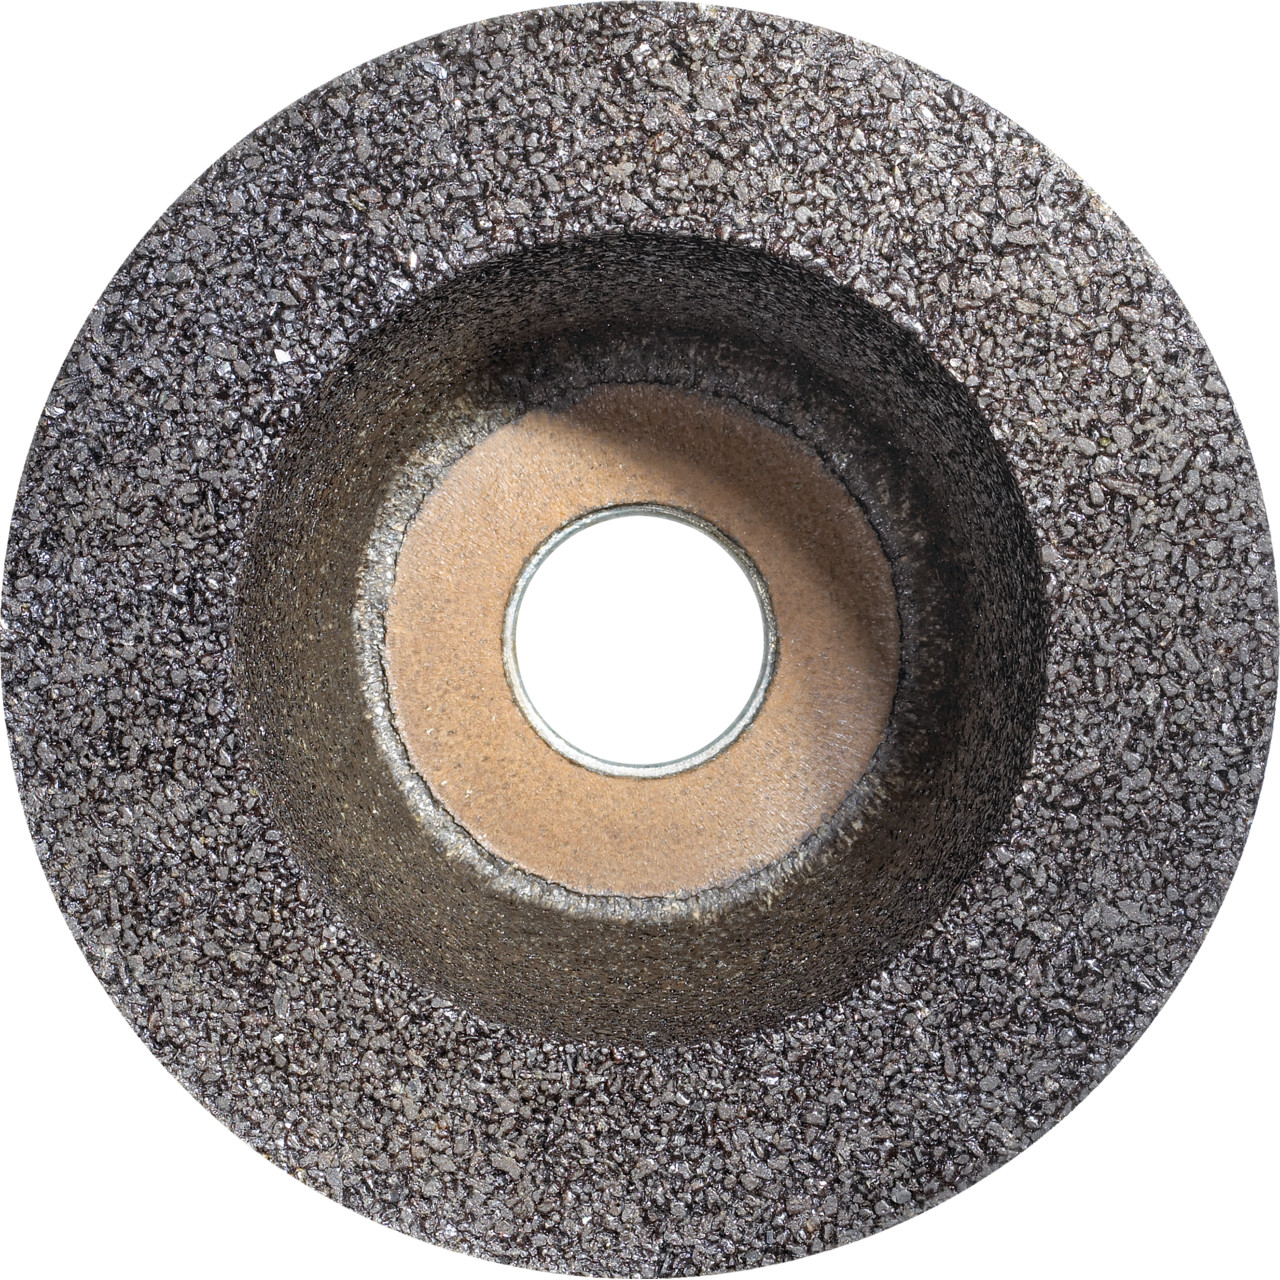 Tyrolit Pot en résine synthétique DxTxGE 100x45xM14 Pour la pierre, forme : 6ZB (pot à meuler), art. 56895